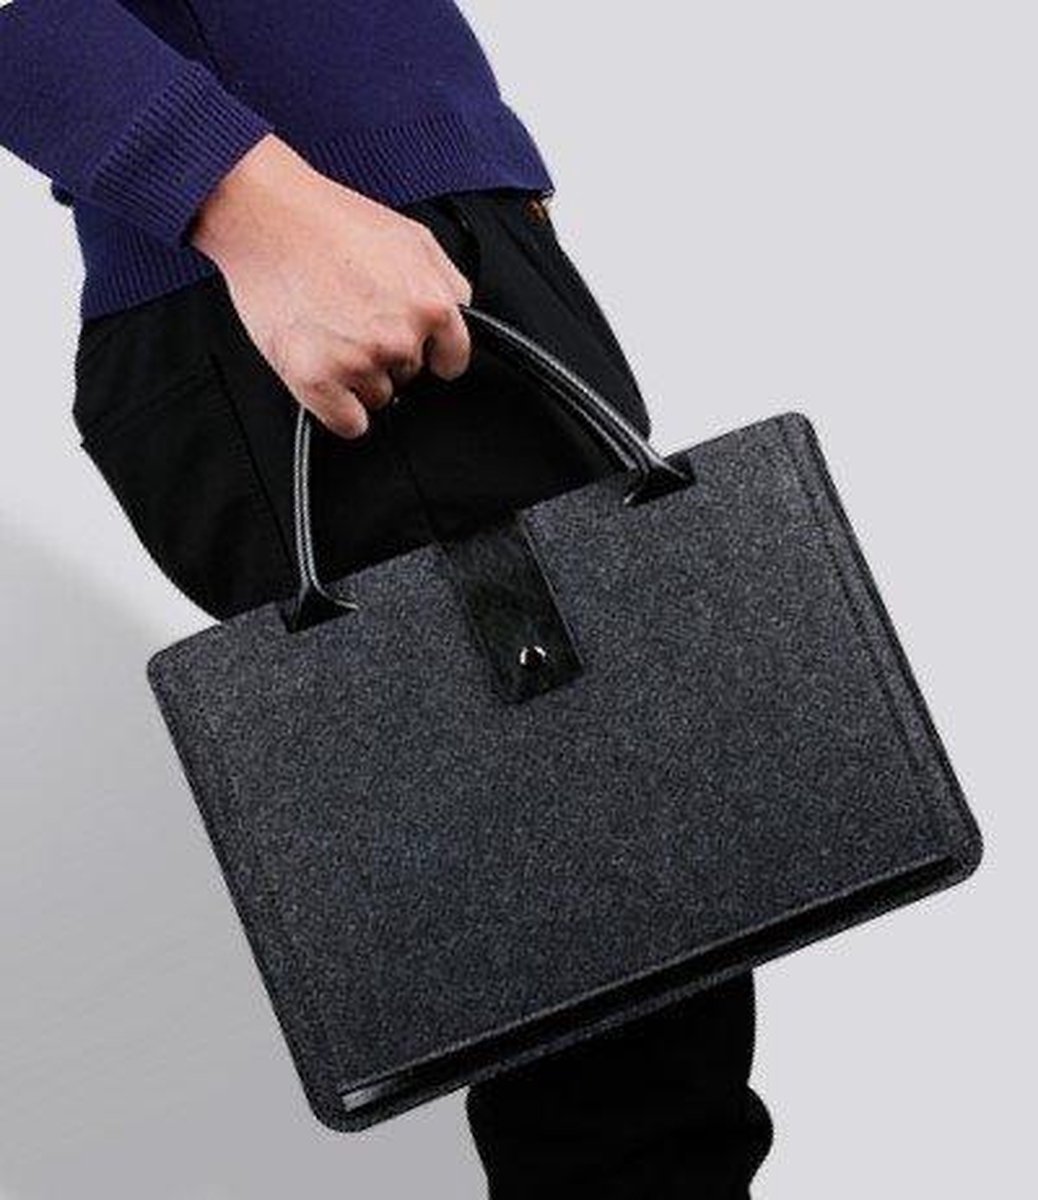 Zwarte Laptop Tas voor MacBook Air 11.6 inch